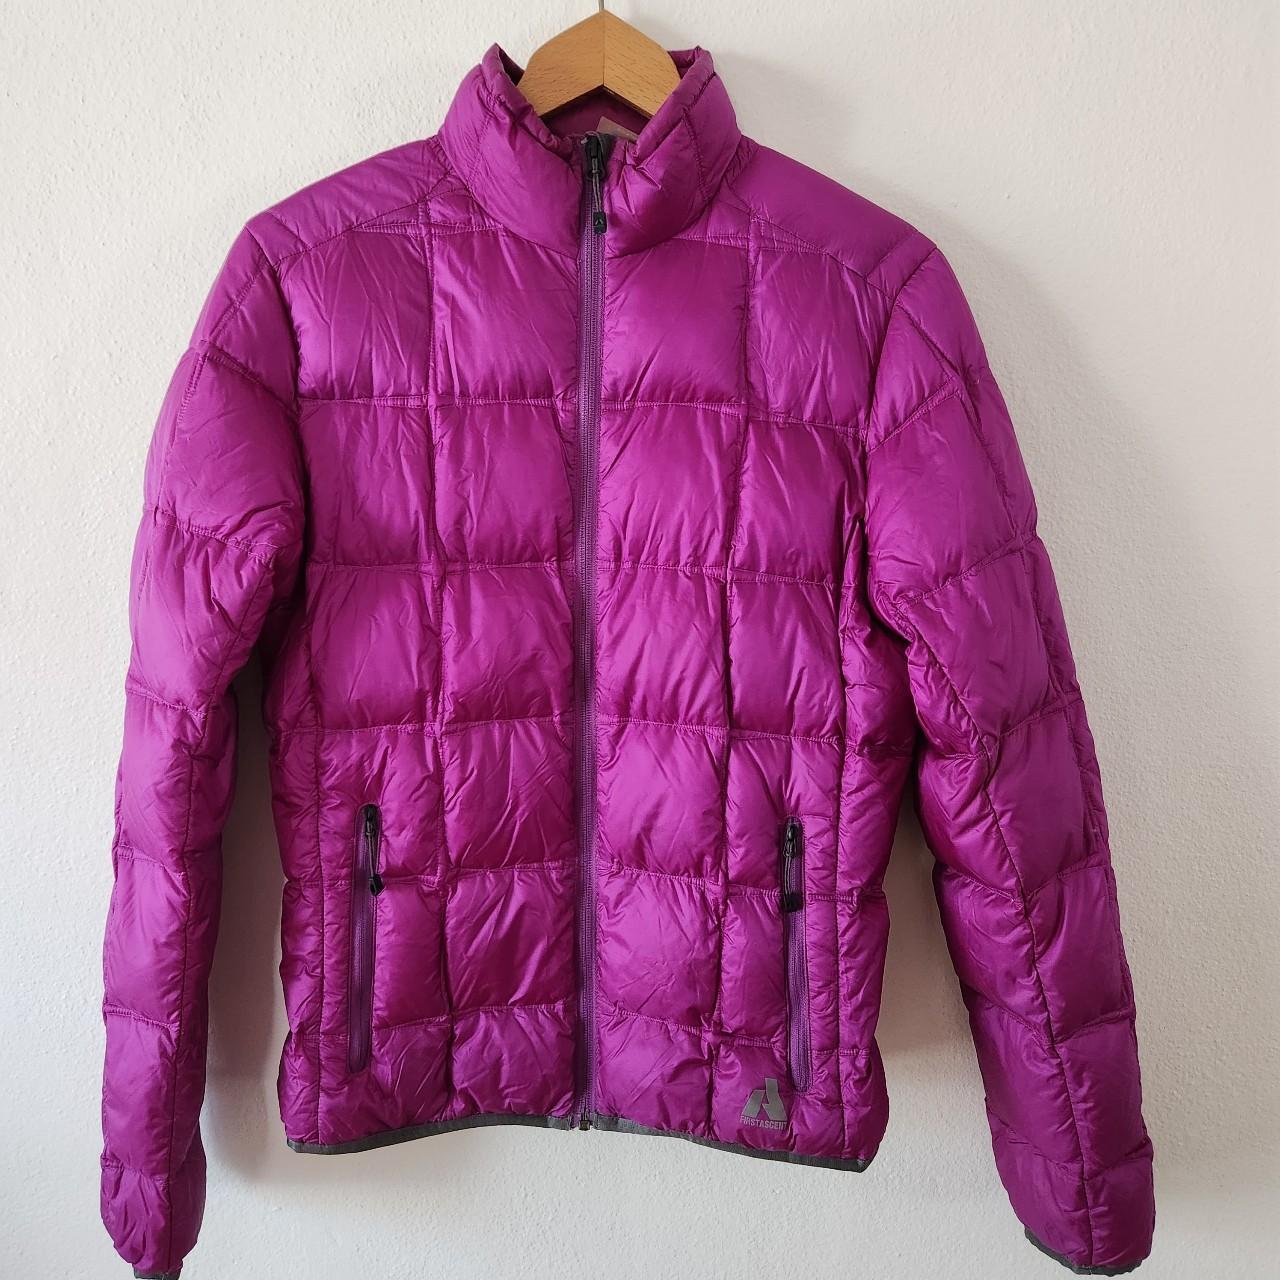 Eddie Bauer Women's Pink and Purple Jacket | Depop